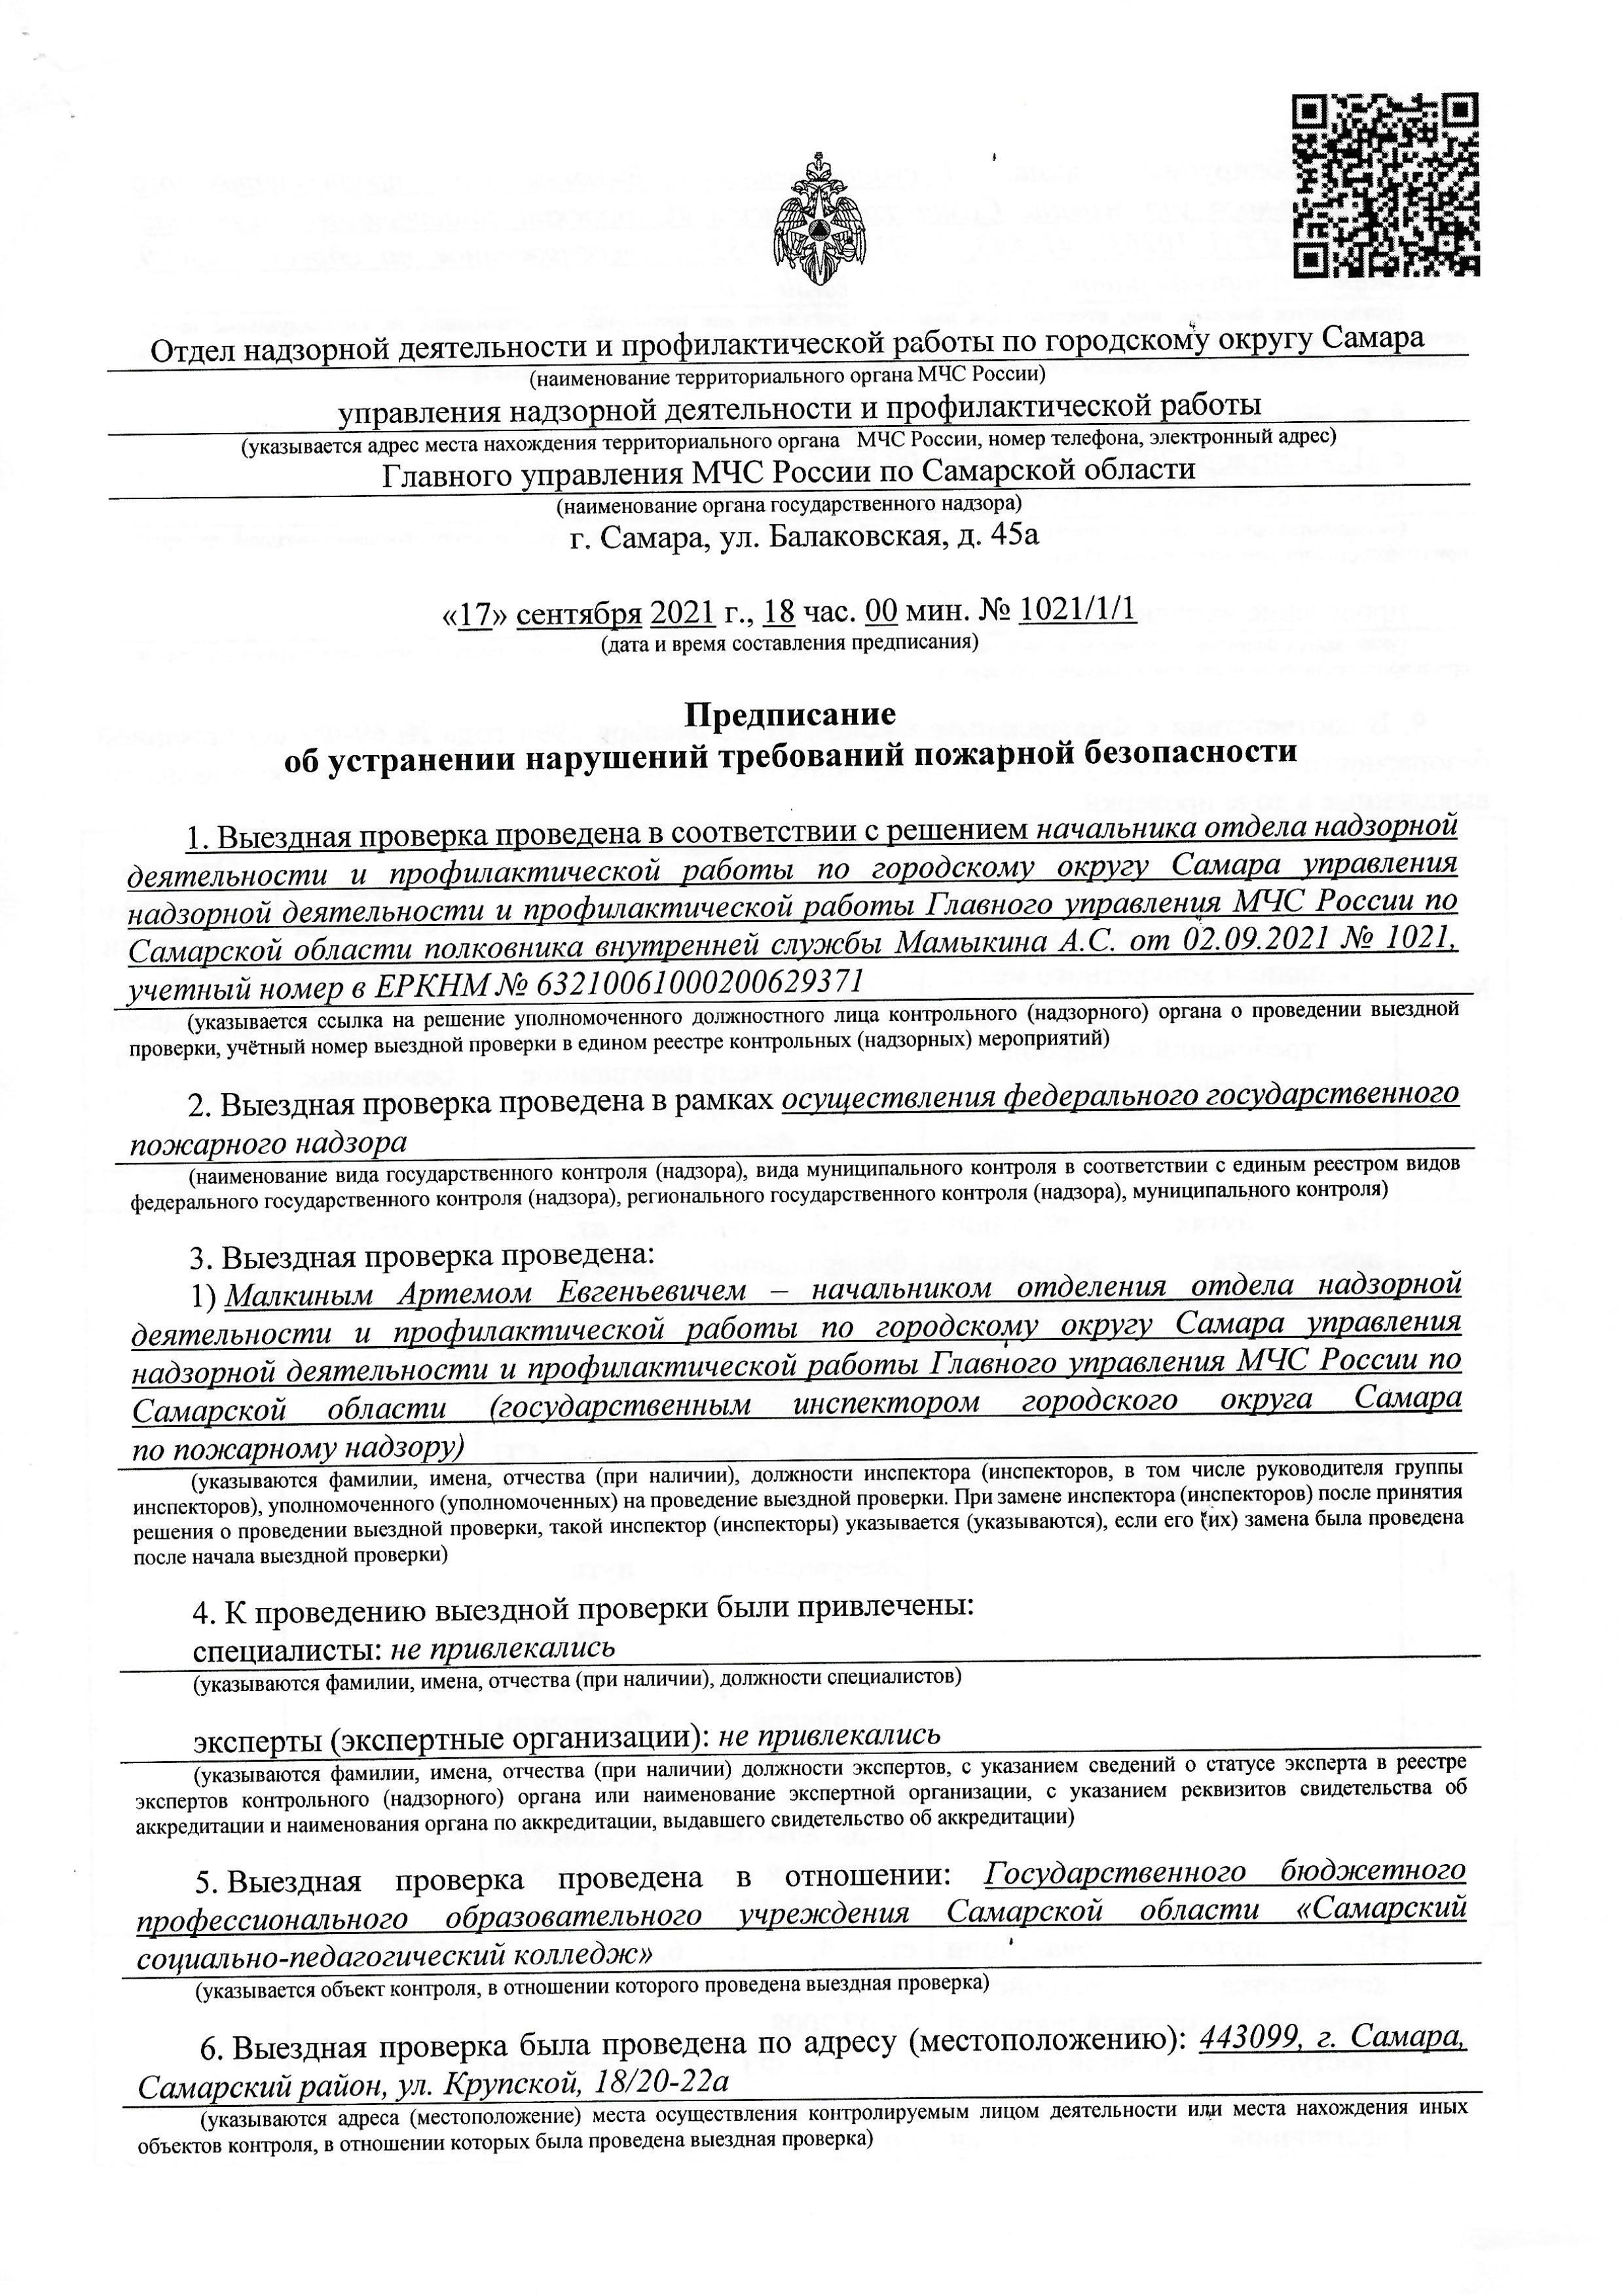 ГУ МЧС России по Самарской области от 17.09.2021